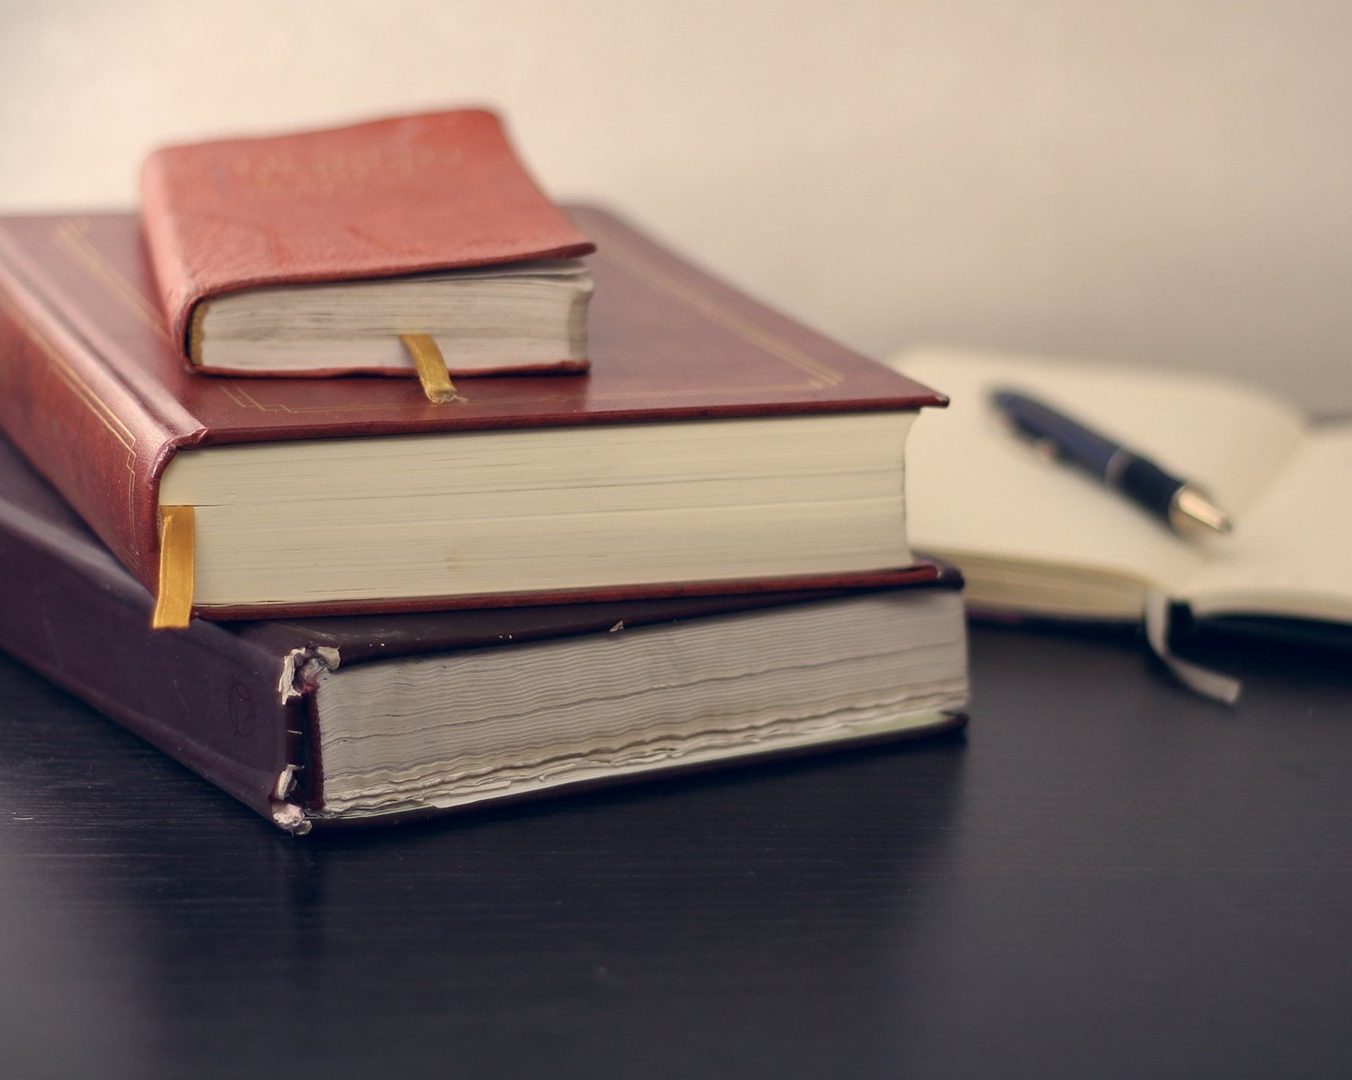 Une pile de livres et un stylo reposant au milieu d’un carnet ouvert.